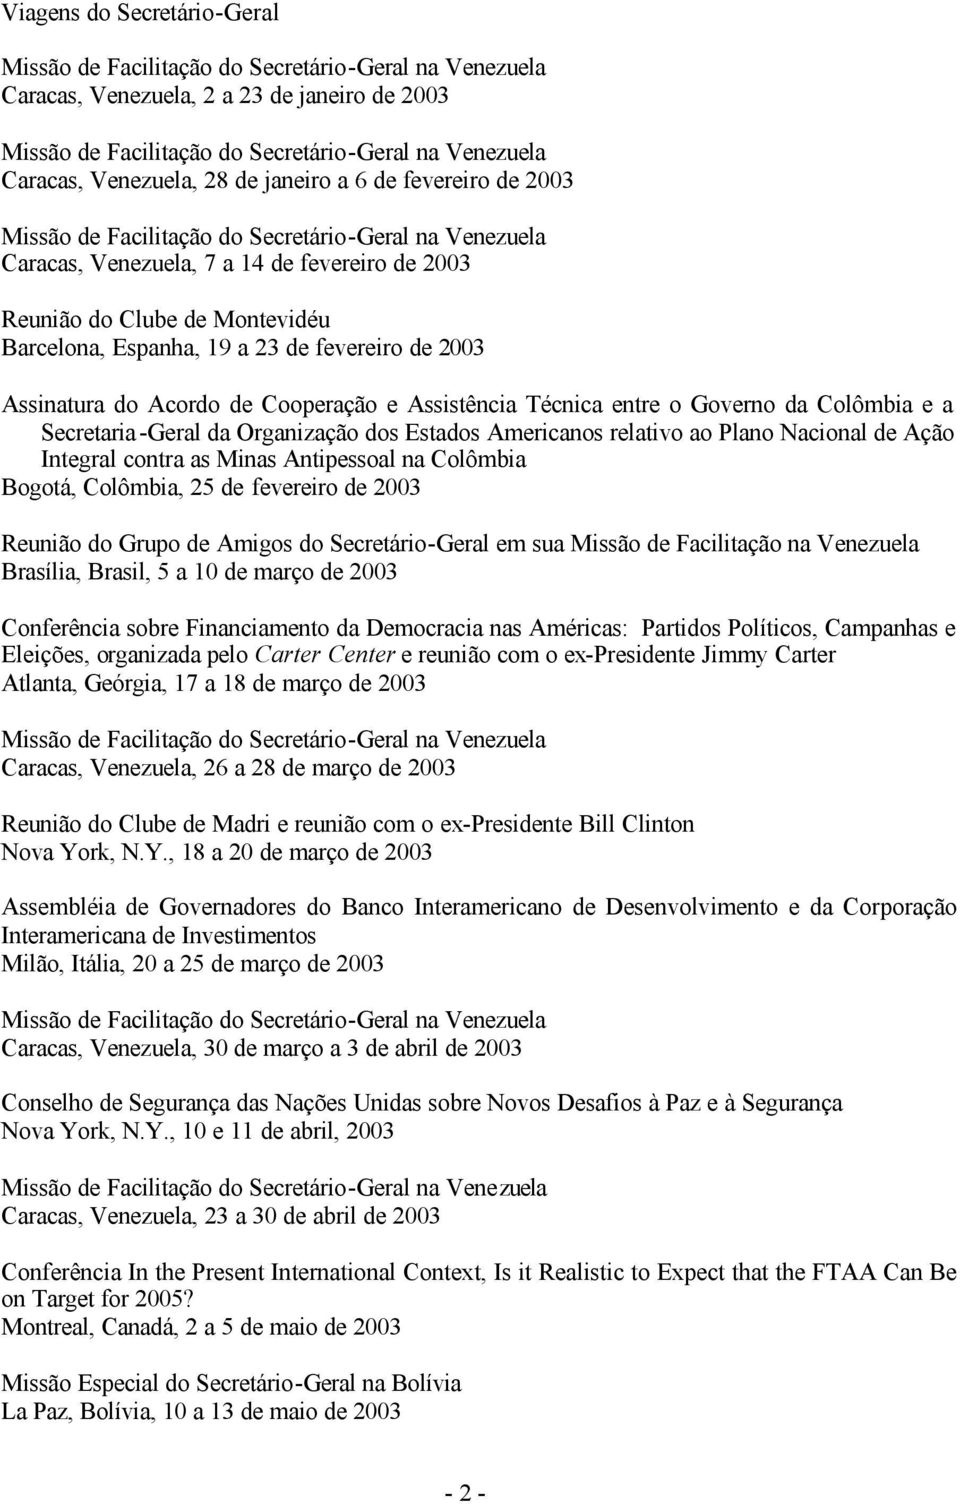 Americanos relativo ao Plano Nacional de Ação Integral contra as Minas Antipessoal na Colômbia Bogotá, Colômbia, 25 de fevereiro de 2003 Reunião do Grupo de Amigos do Secretário-Geral em sua Missão